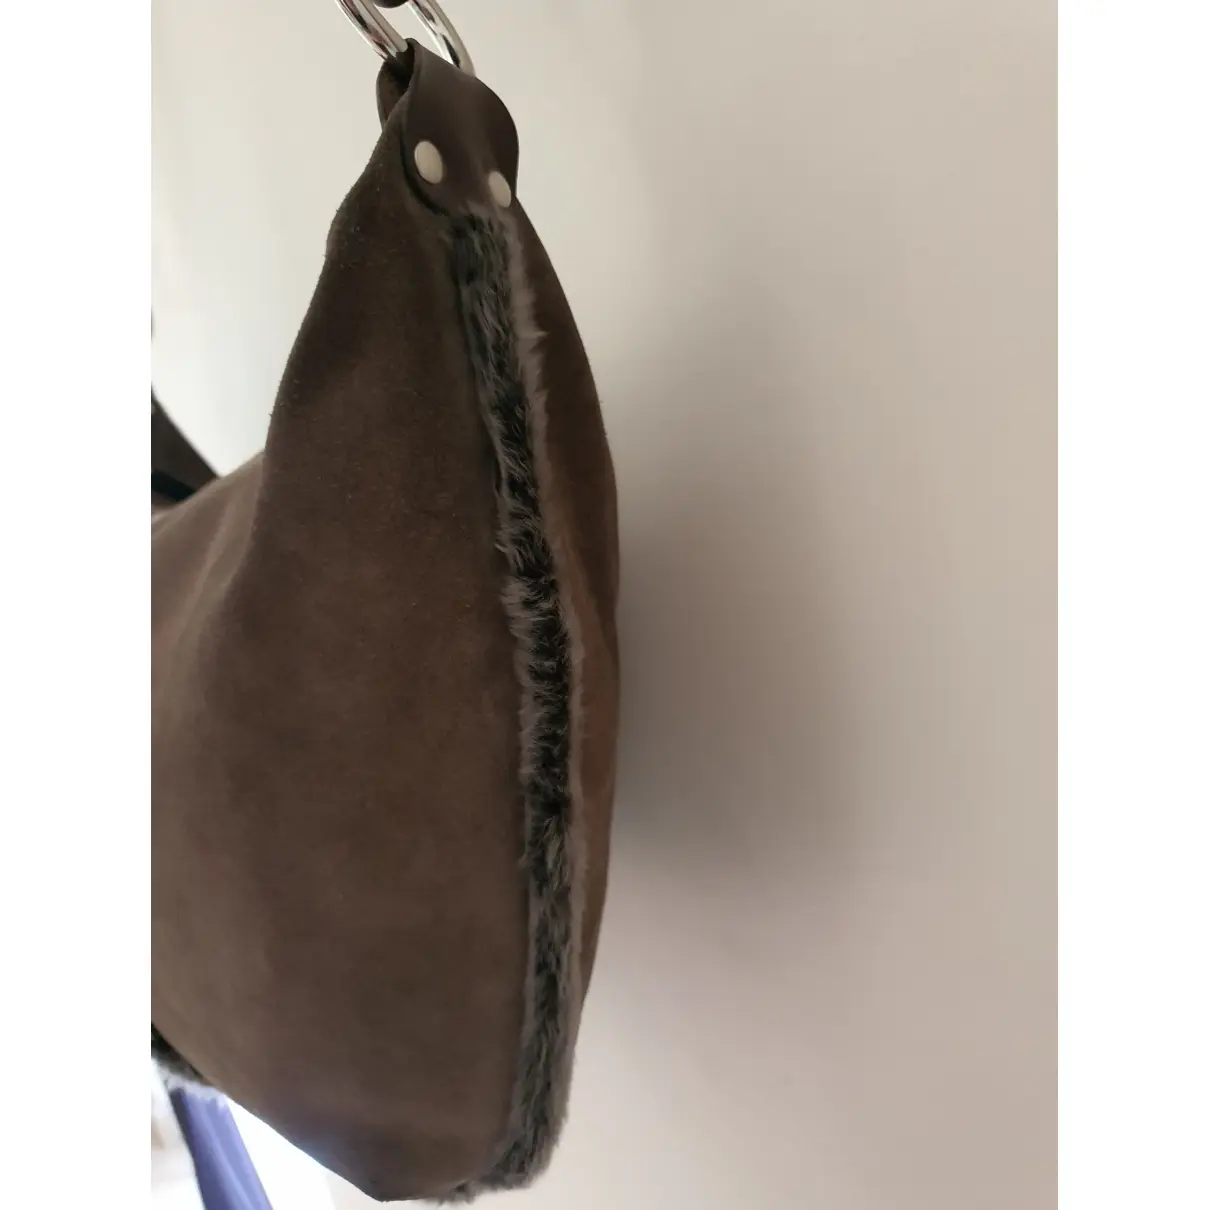 Leather handbag Furla - Vintage